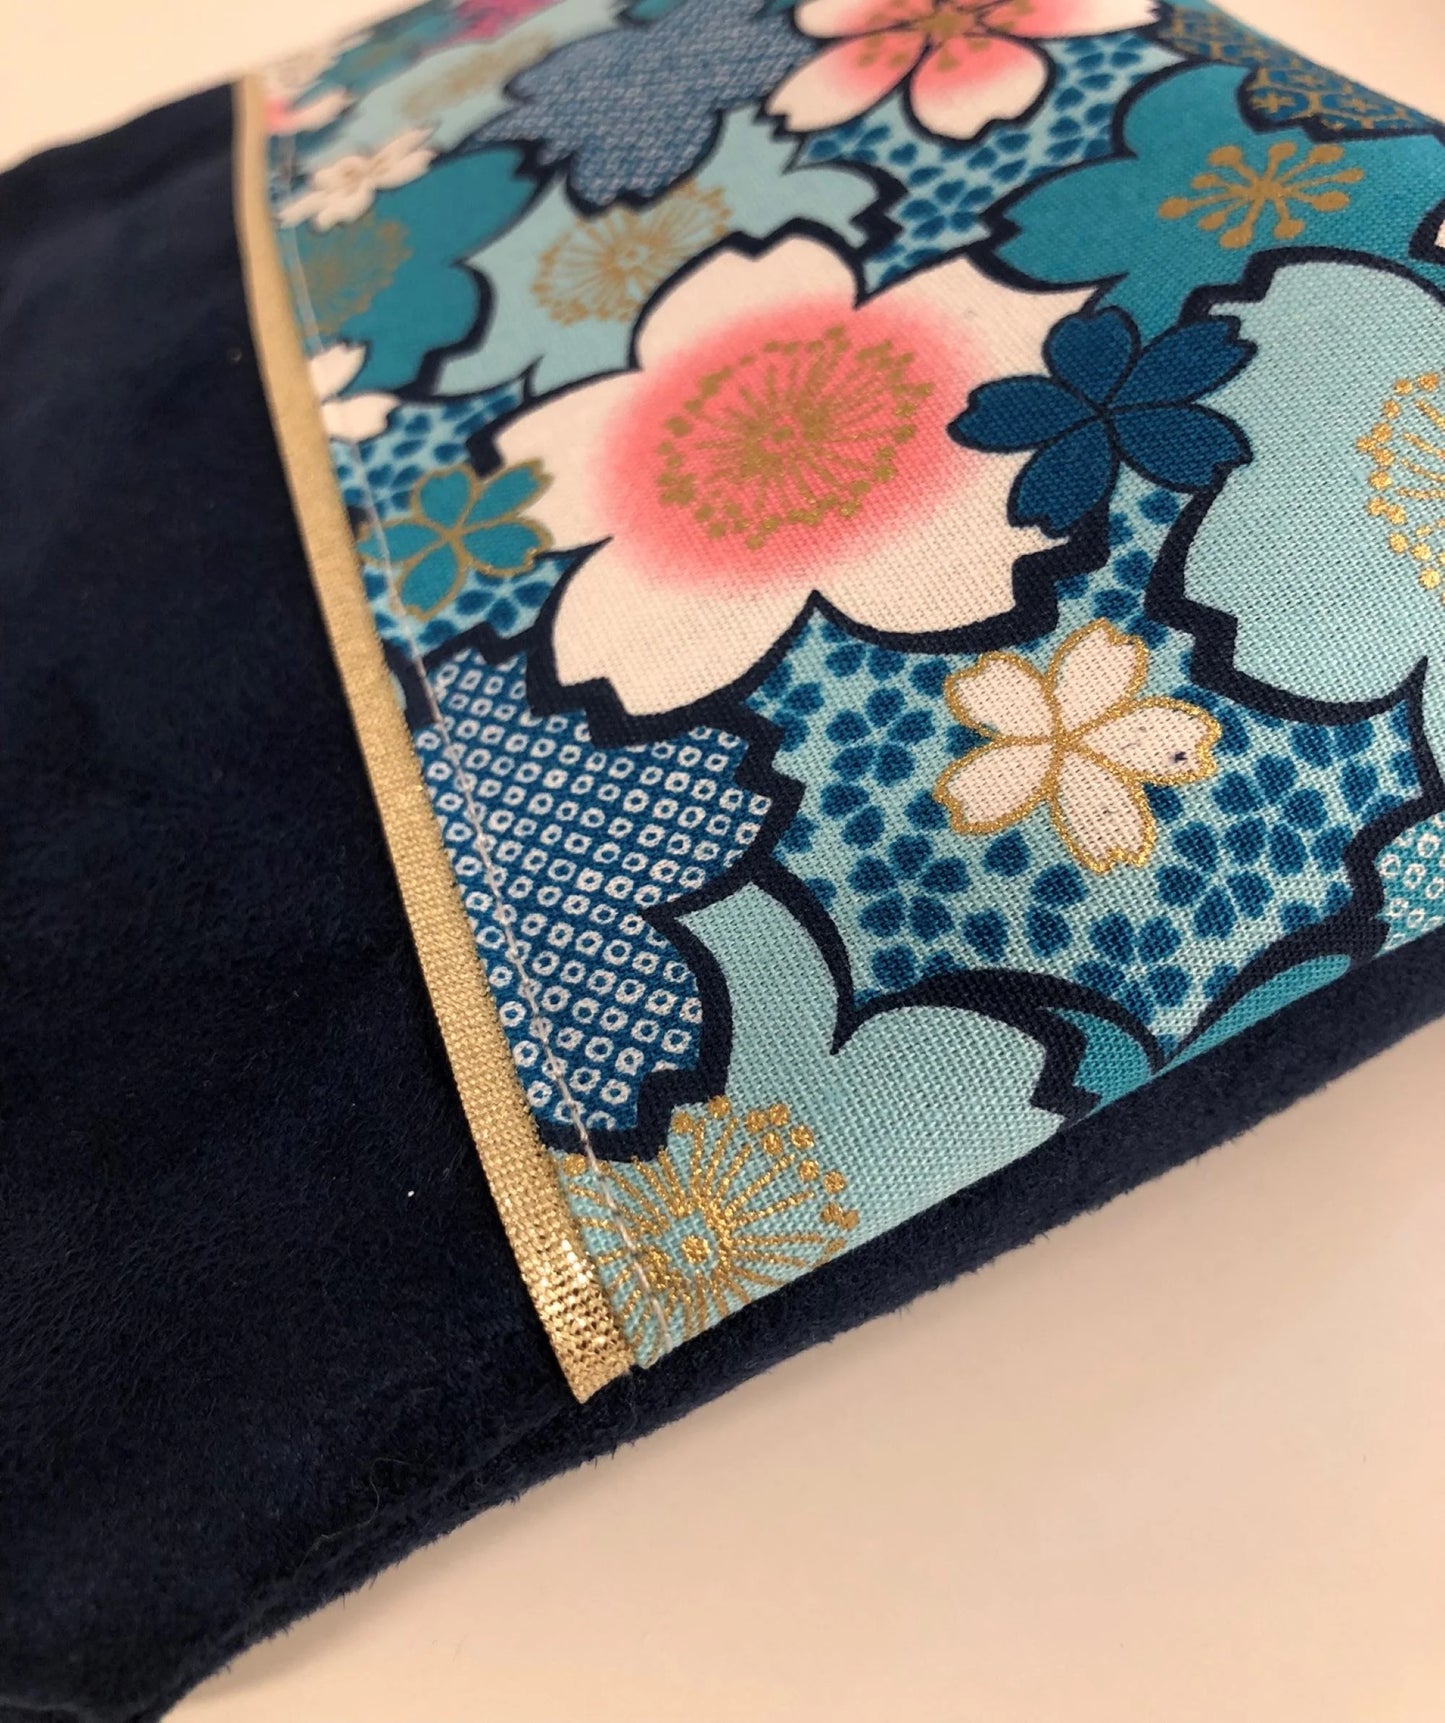 Détail de La pochette à maquillage bleu marine en tissu japonais fleuri turquoise